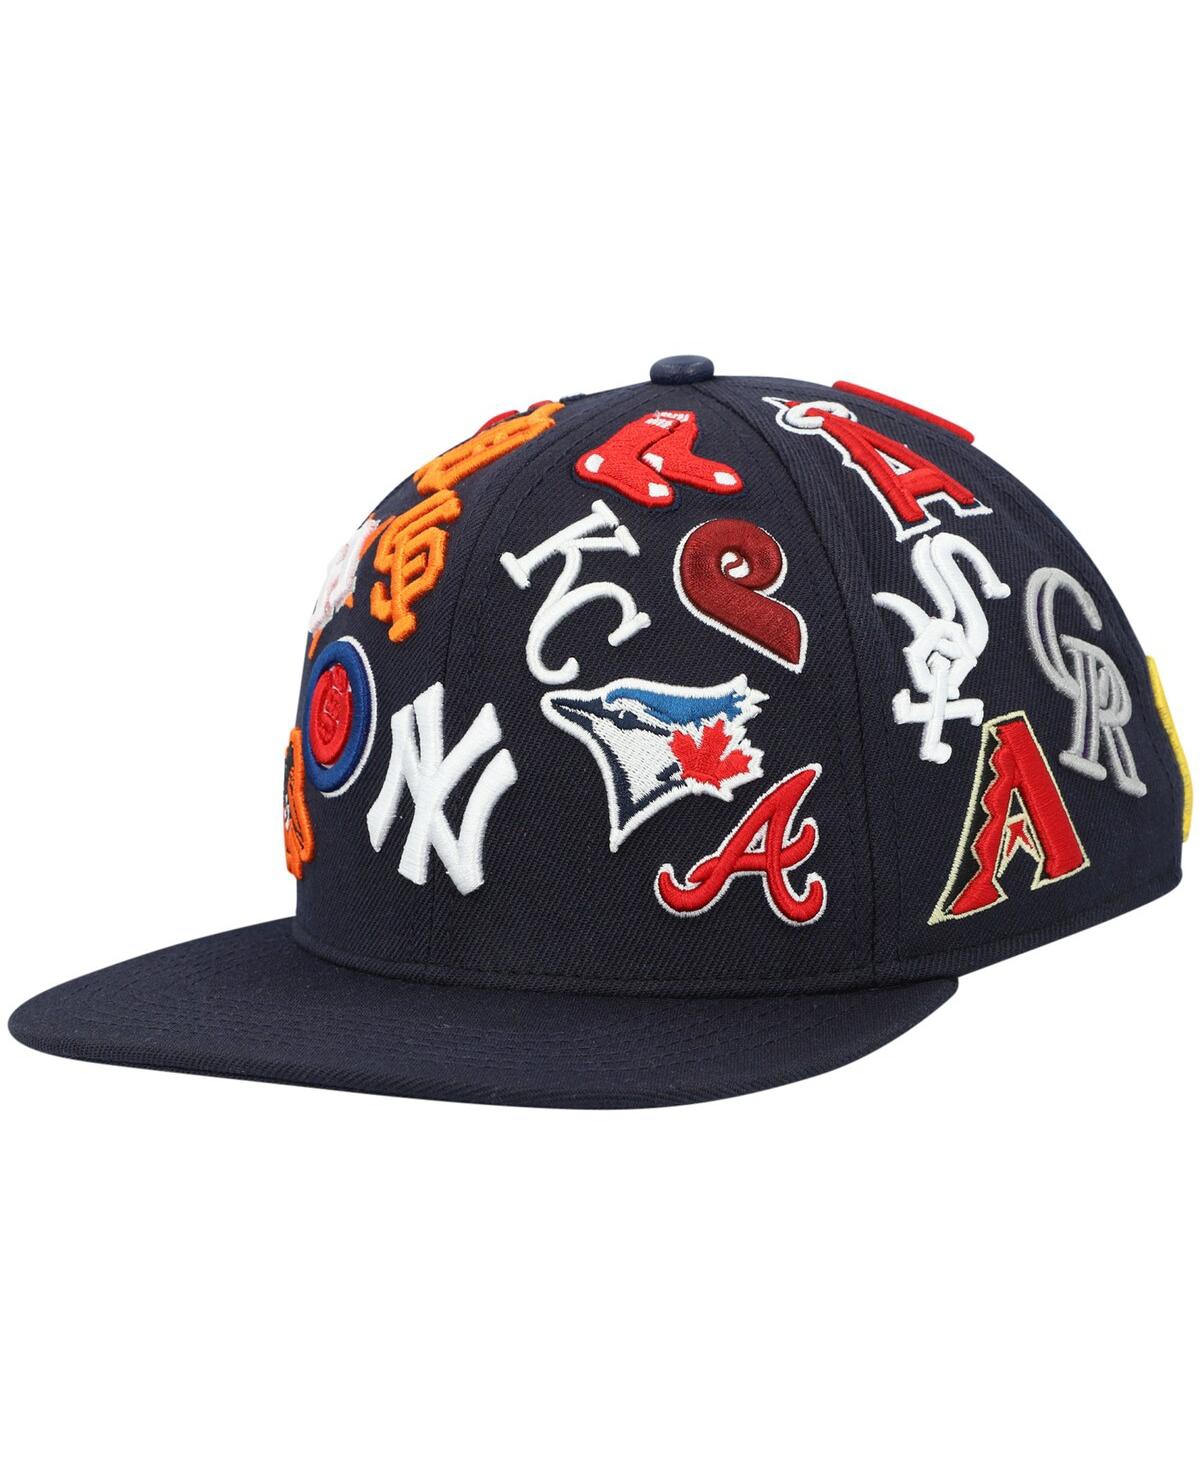 Shop Pro Standard Men's  Navy Mlb Pro League Wool Snapback Hat